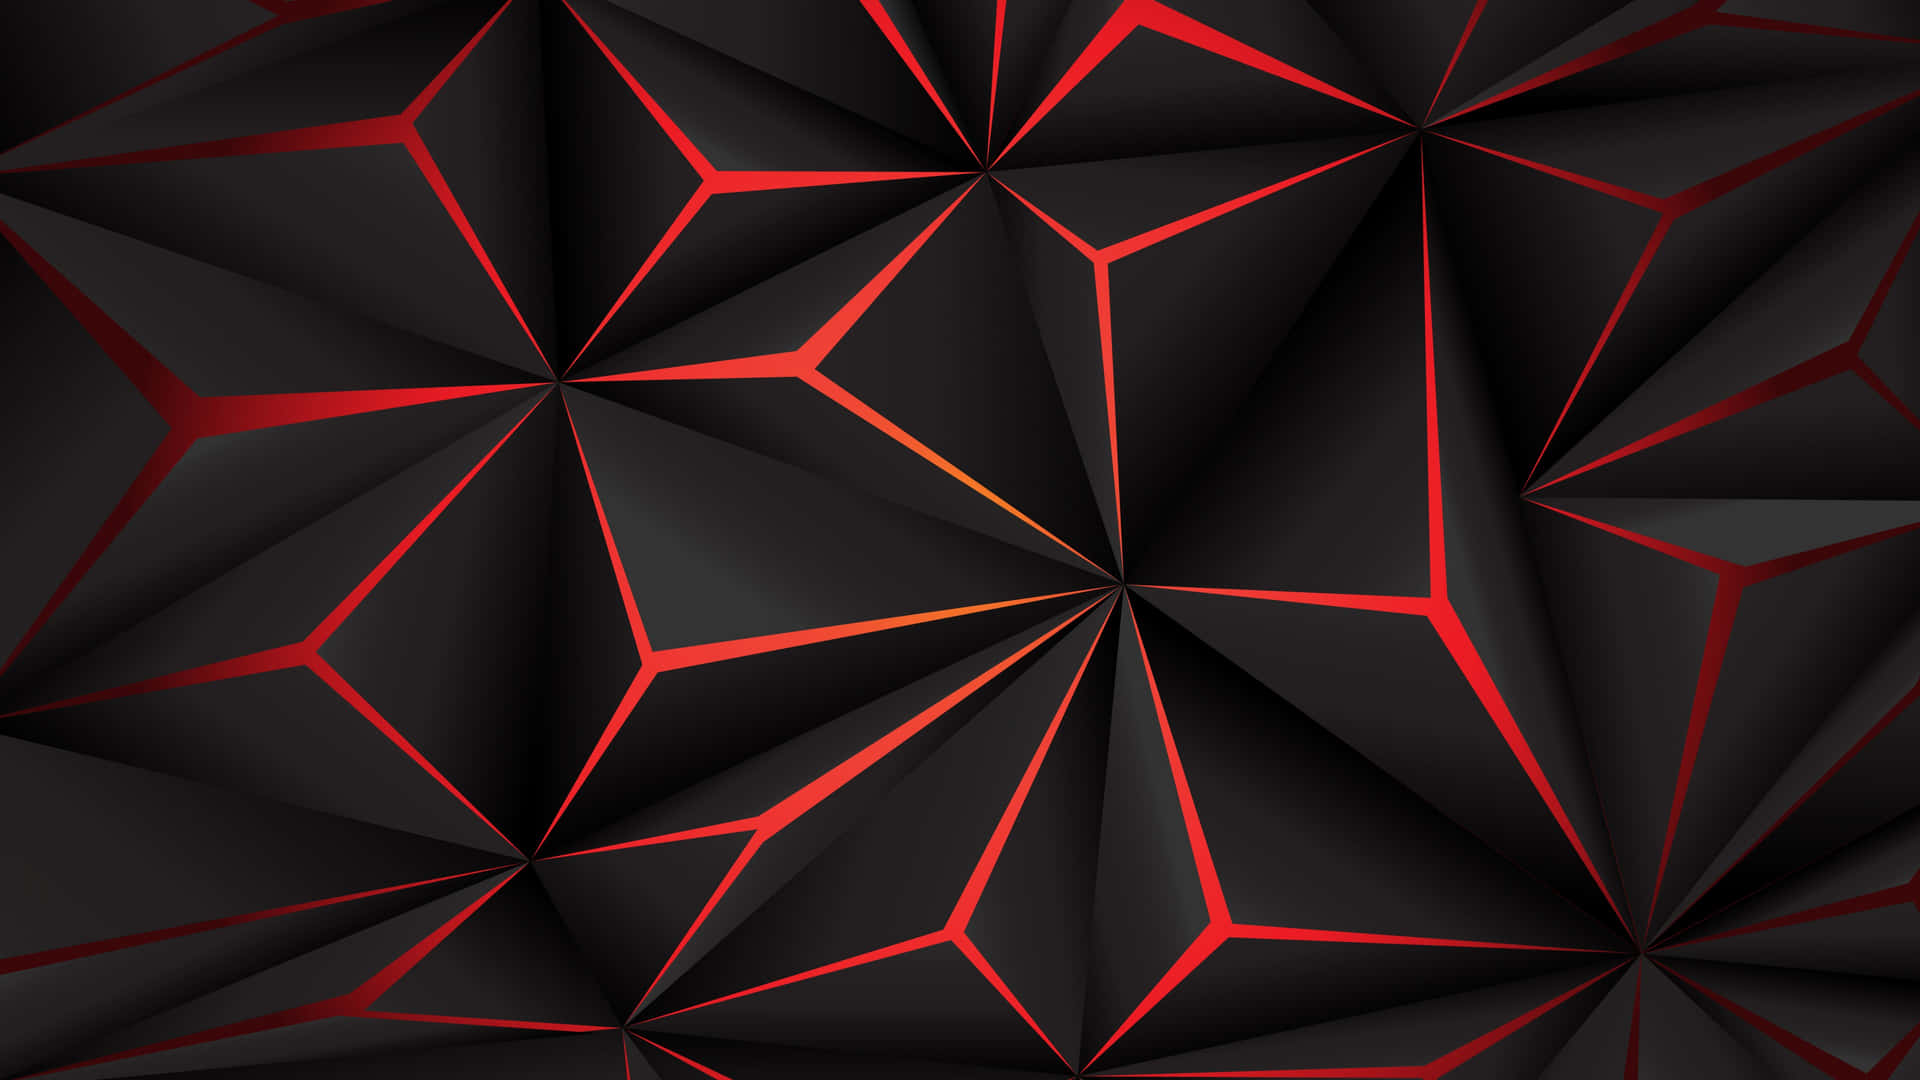 Laddig Fortrylle Af Dette Geometriske Hexagonmønster. Wallpaper